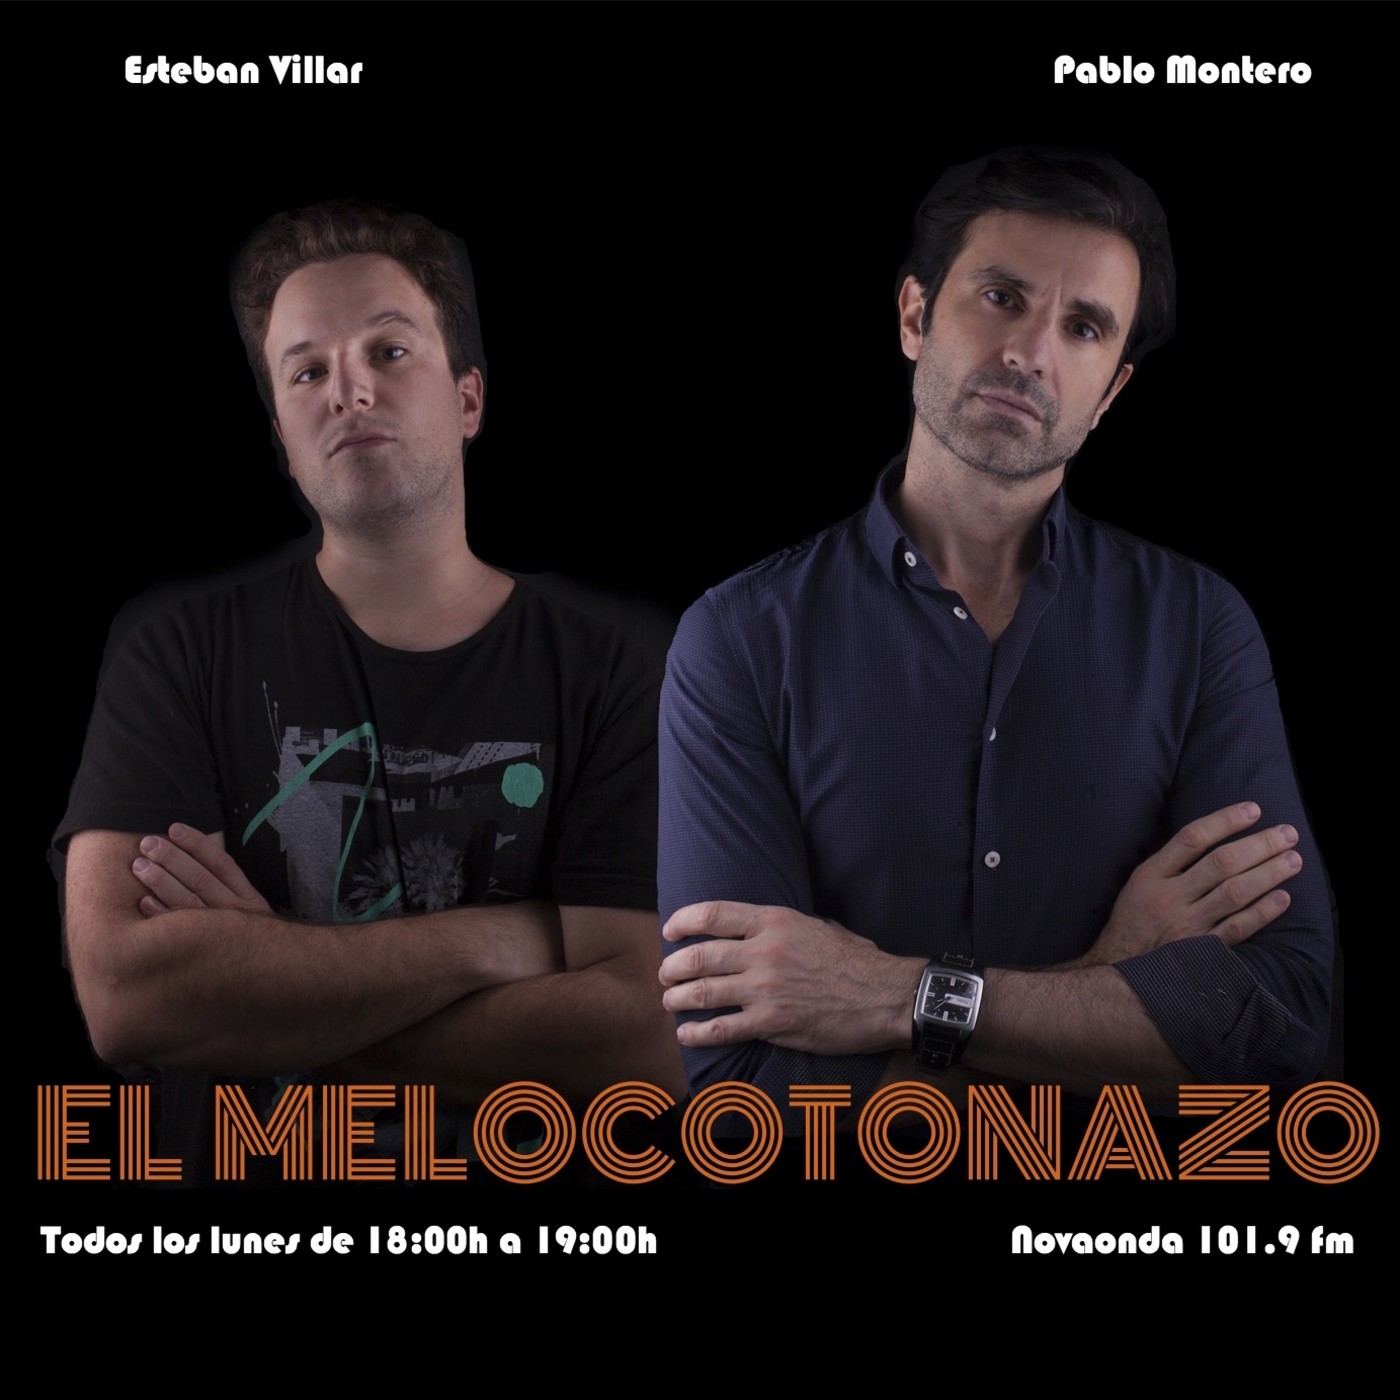 MelocotonazoFM